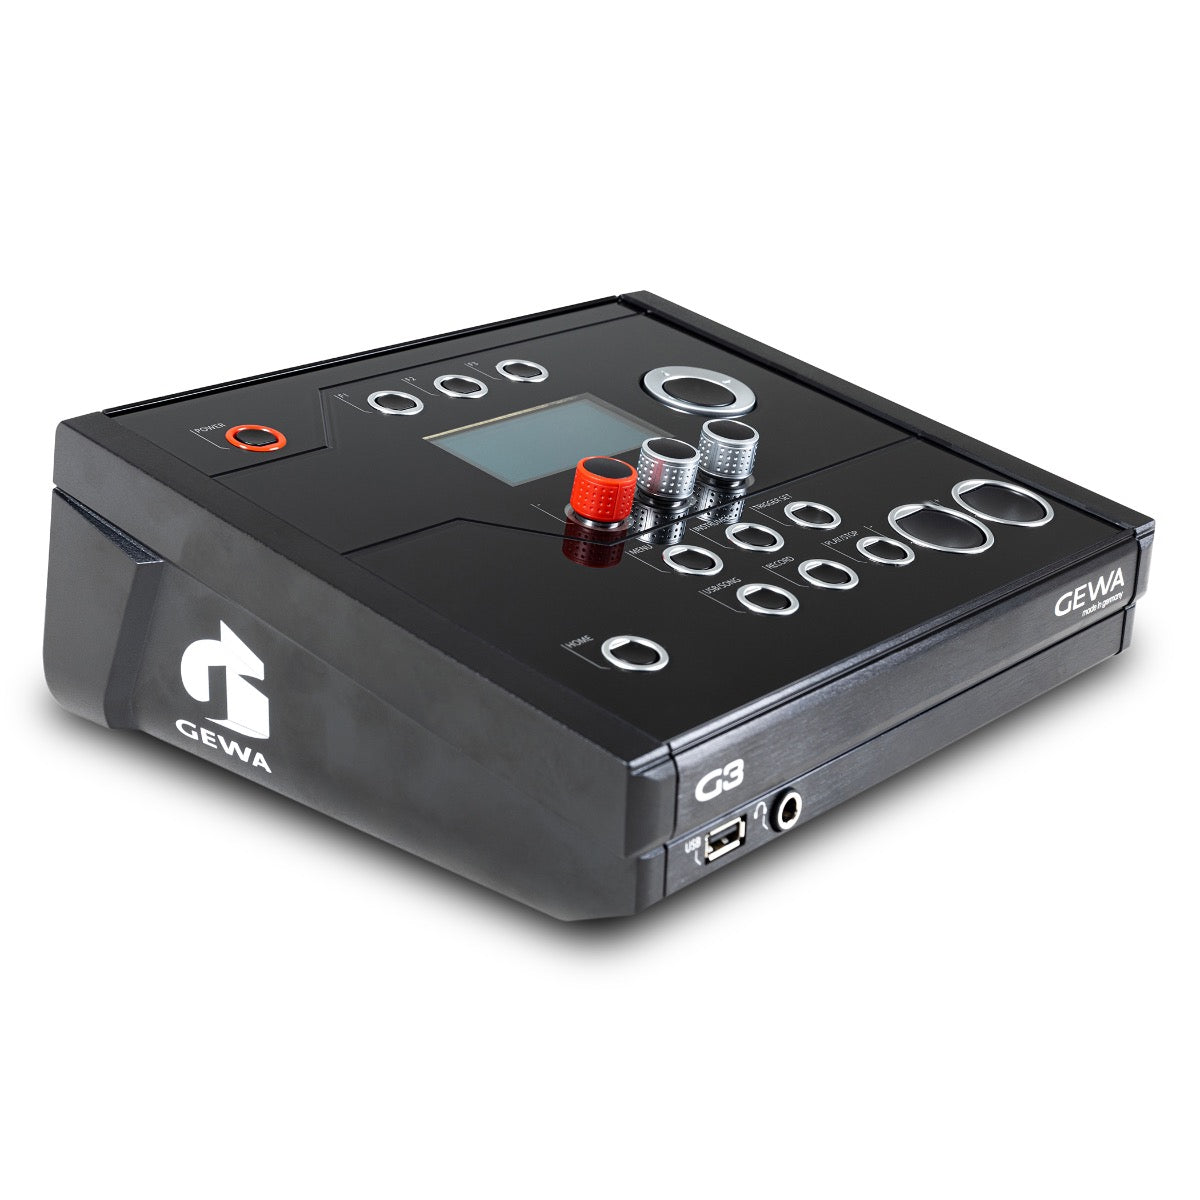 Gewa G3 Pro 5 Kit - Black Sparkle, View 6